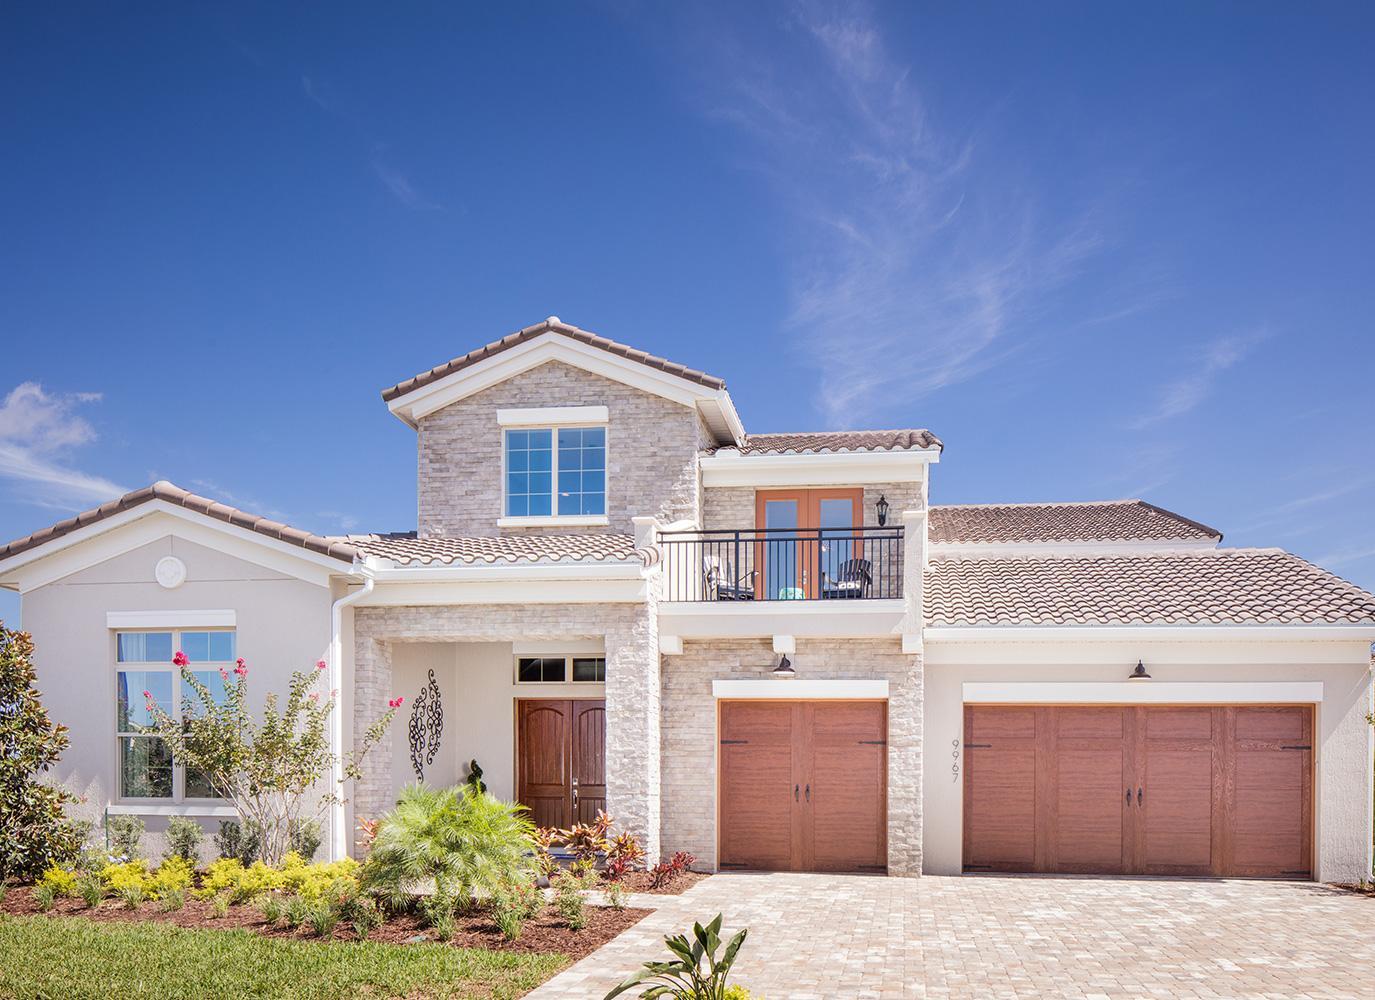 Prosječna cijena novih domova u SAD-u iznosi 456.800 dolara